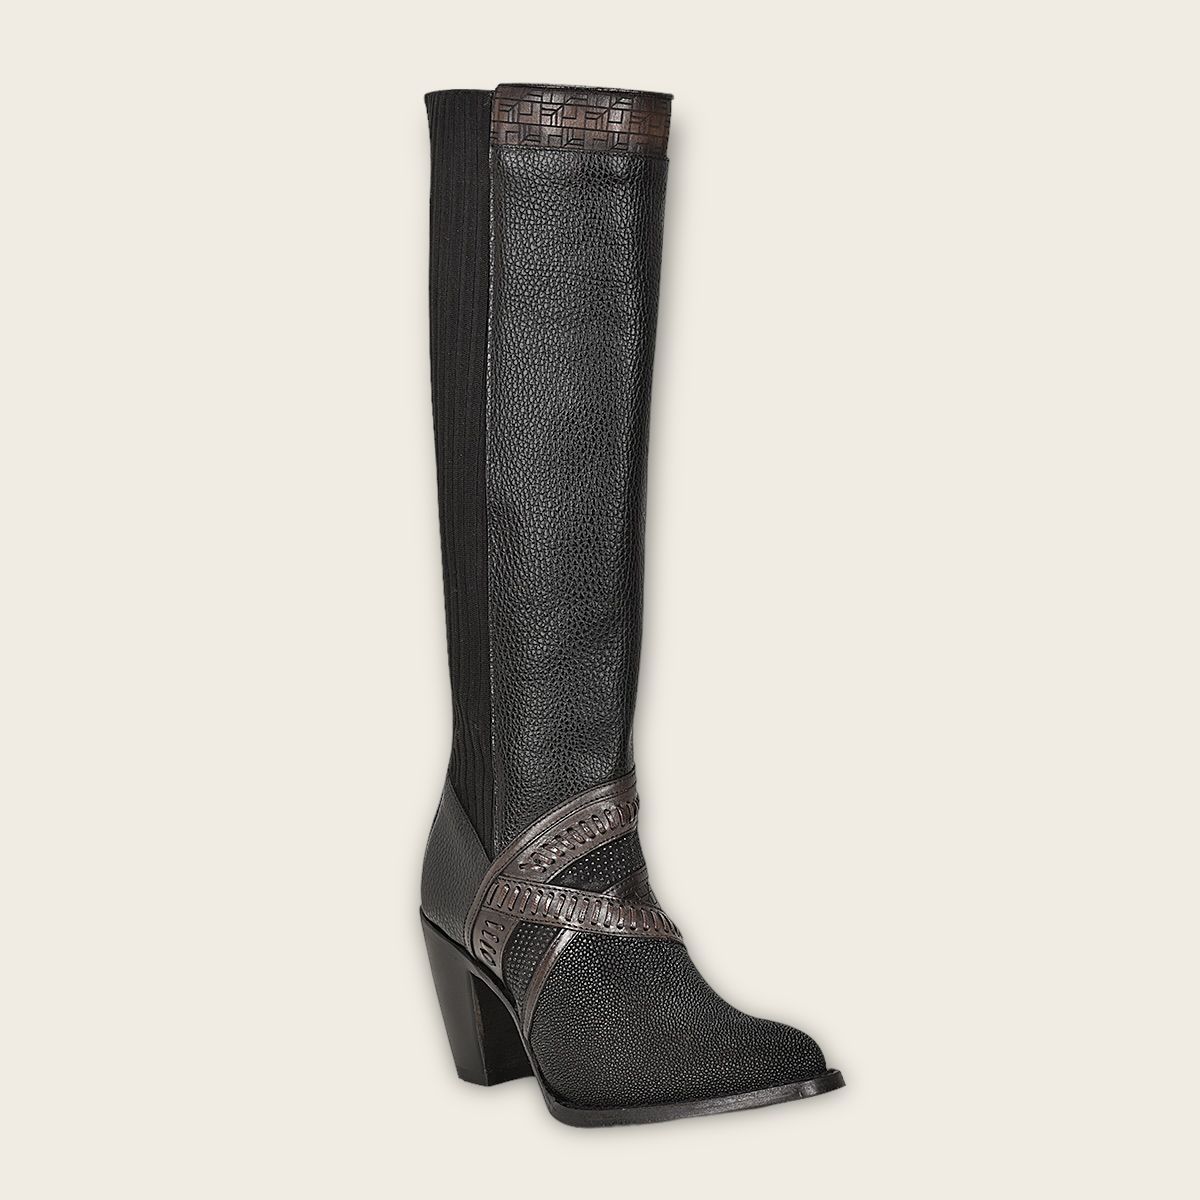 3F99MA - Cuadra black stingray boots for women-CUADRA-Kuet-Cuadra-Boots